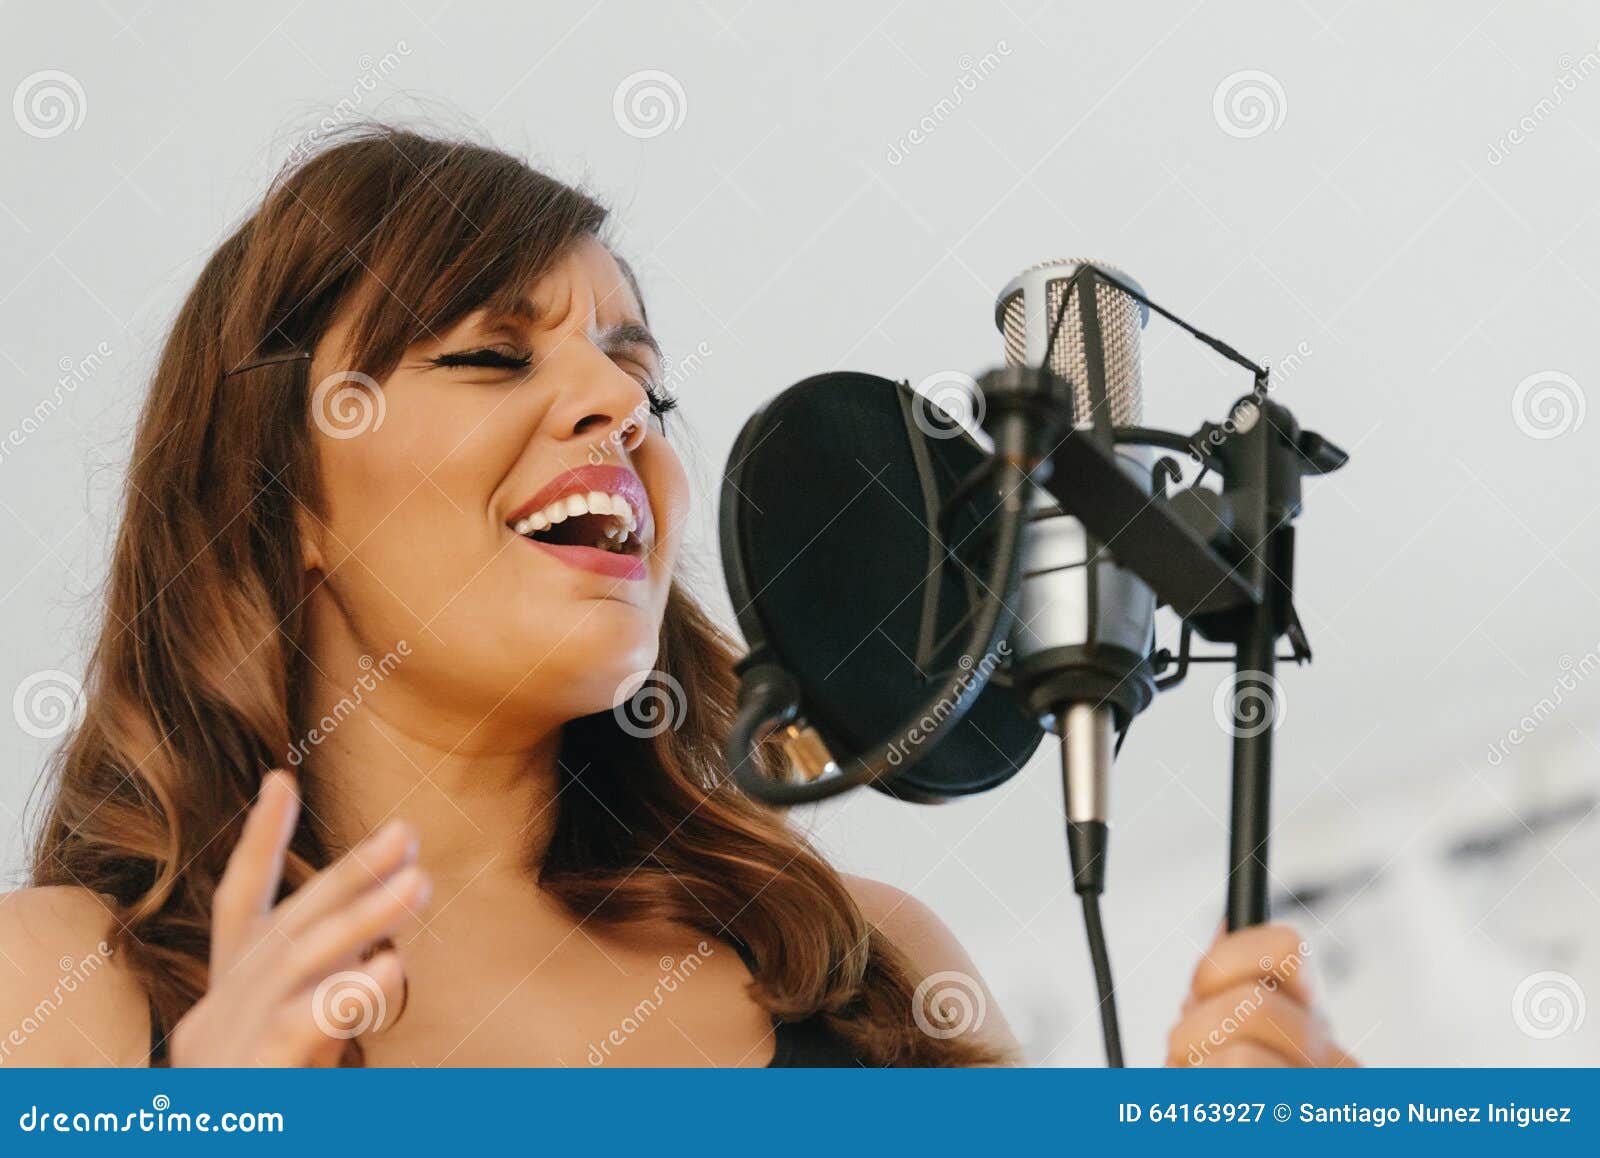 Пение нижний новгород. Занятия вокалом. Женщины обучаются вокалу. Уроки вокала для взрослых. Jpeg. Индивидуальный урок по вокалу.